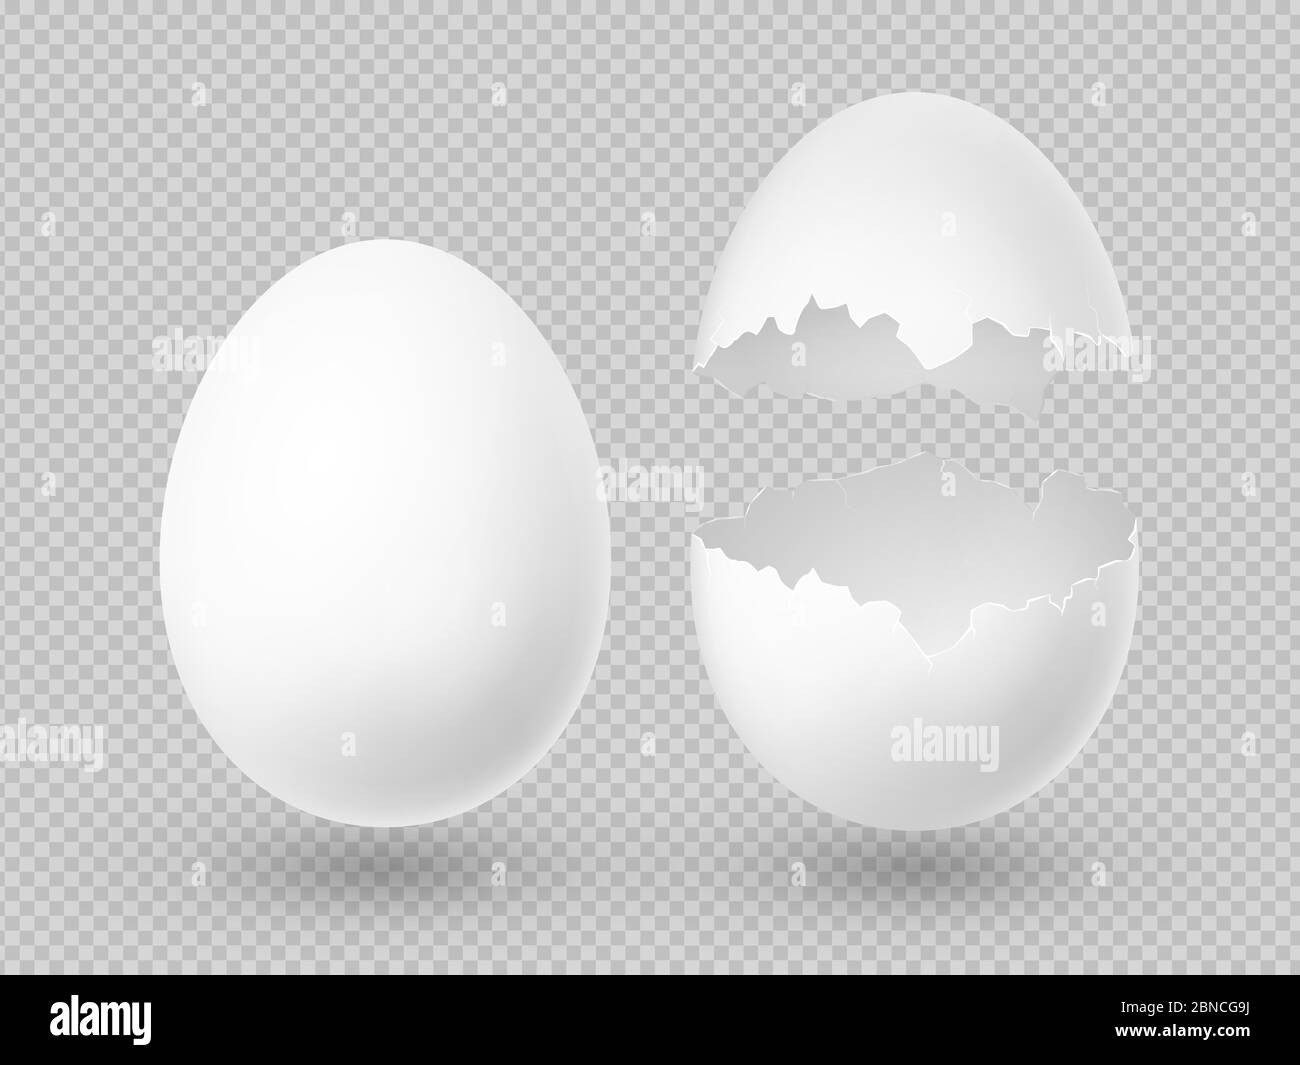 Realistische Vektor weiße Eier mit ganzen und gebrochenen Schale isoliert auf transparentem Hintergrund Illustration Stock Vektor